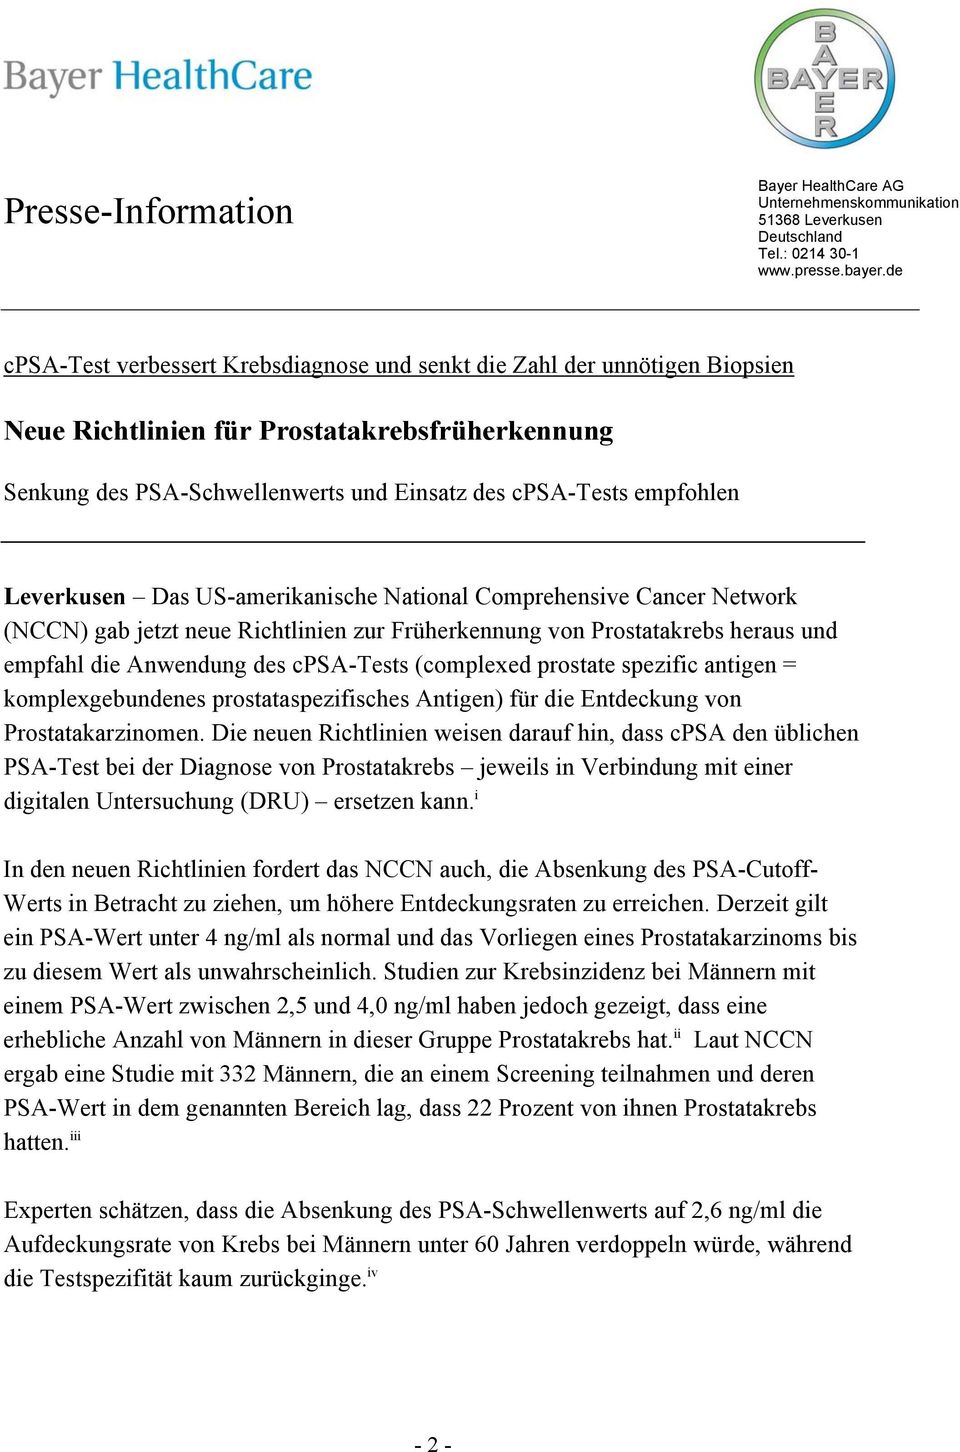 Leverkusen Das US-amerikanische National Comprehensive Cancer Network (NCCN) gab jetzt neue Richtlinien zur Früherkennung von Prostatakrebs heraus und empfahl die Anwendung des cpsa-tests (complexed